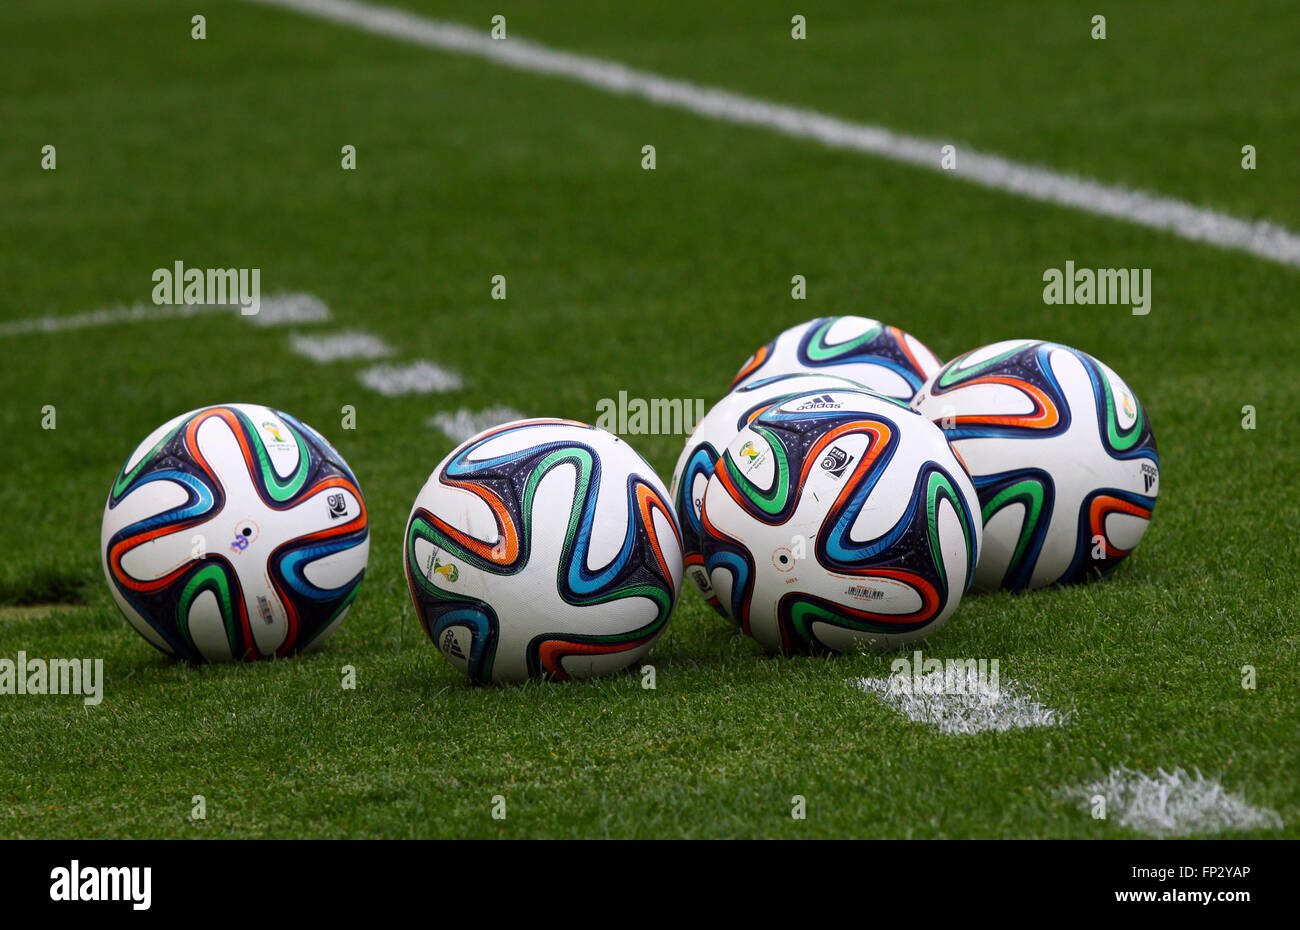 Kiew, UKRAINE - 18. Mai 2014: Offizielle FIFA WM 2014 Kugeln (Brazuca) auf dem Rasen während Ukraine Meisterschaftsspiel zwischen Stockfoto